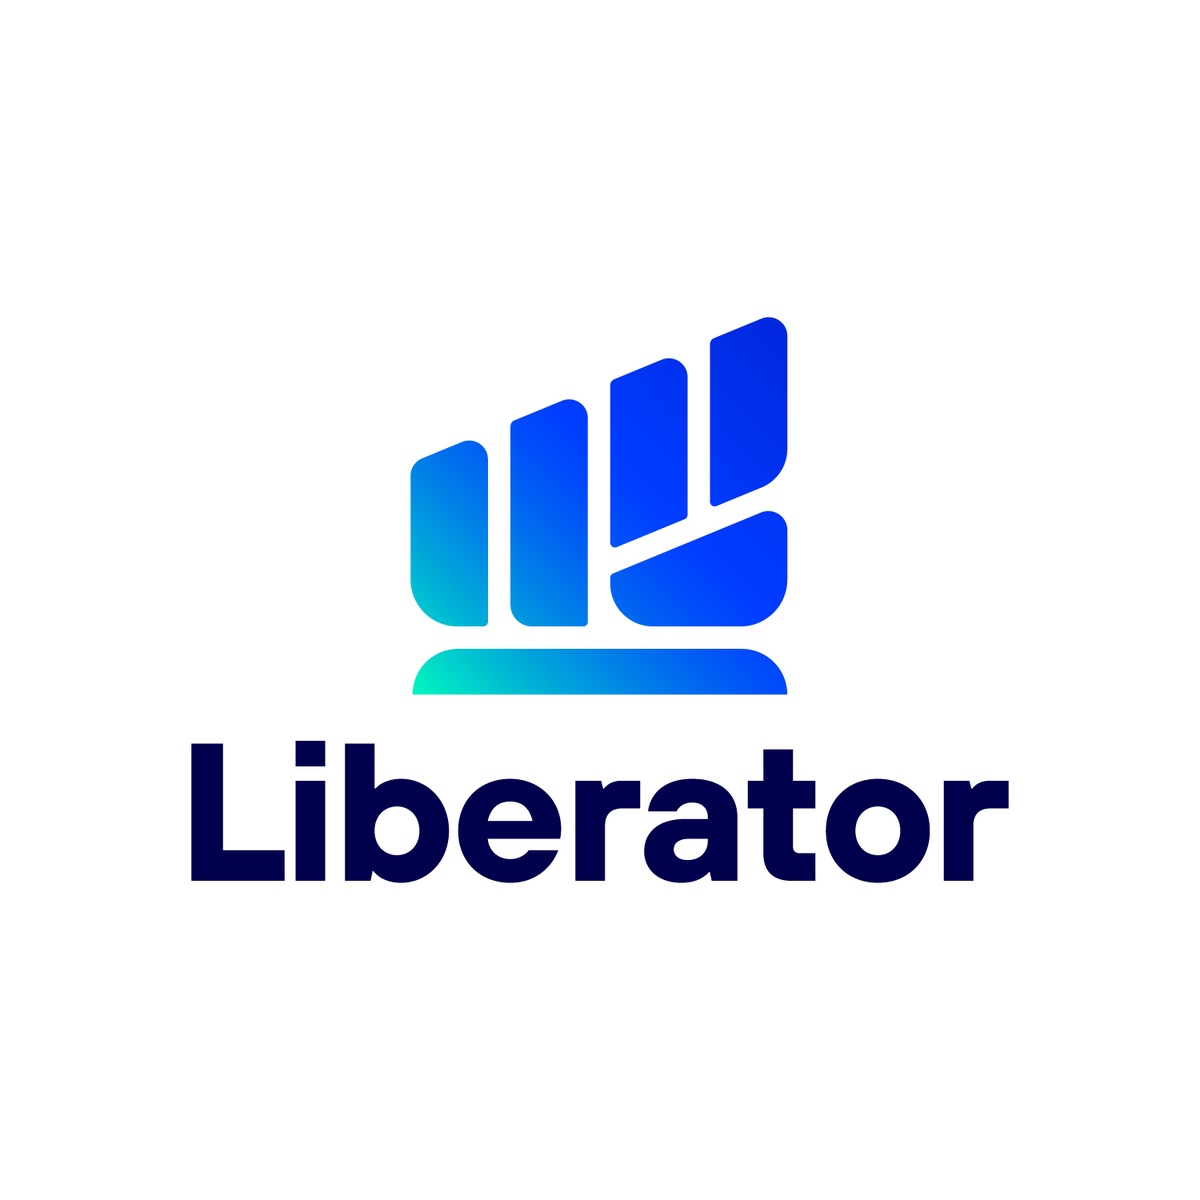 บล.ลิเบอเรเตอร์ เปิดตัวทีมวิเคราะห์หลักทรัพย์ นำทัพโดย จรูญพันธ์ วัฒนพันธ์ พร้อมปูทางสู่ Liberator Academy เริ่มโปรเจกต์แรกกับ LIB Talks 15